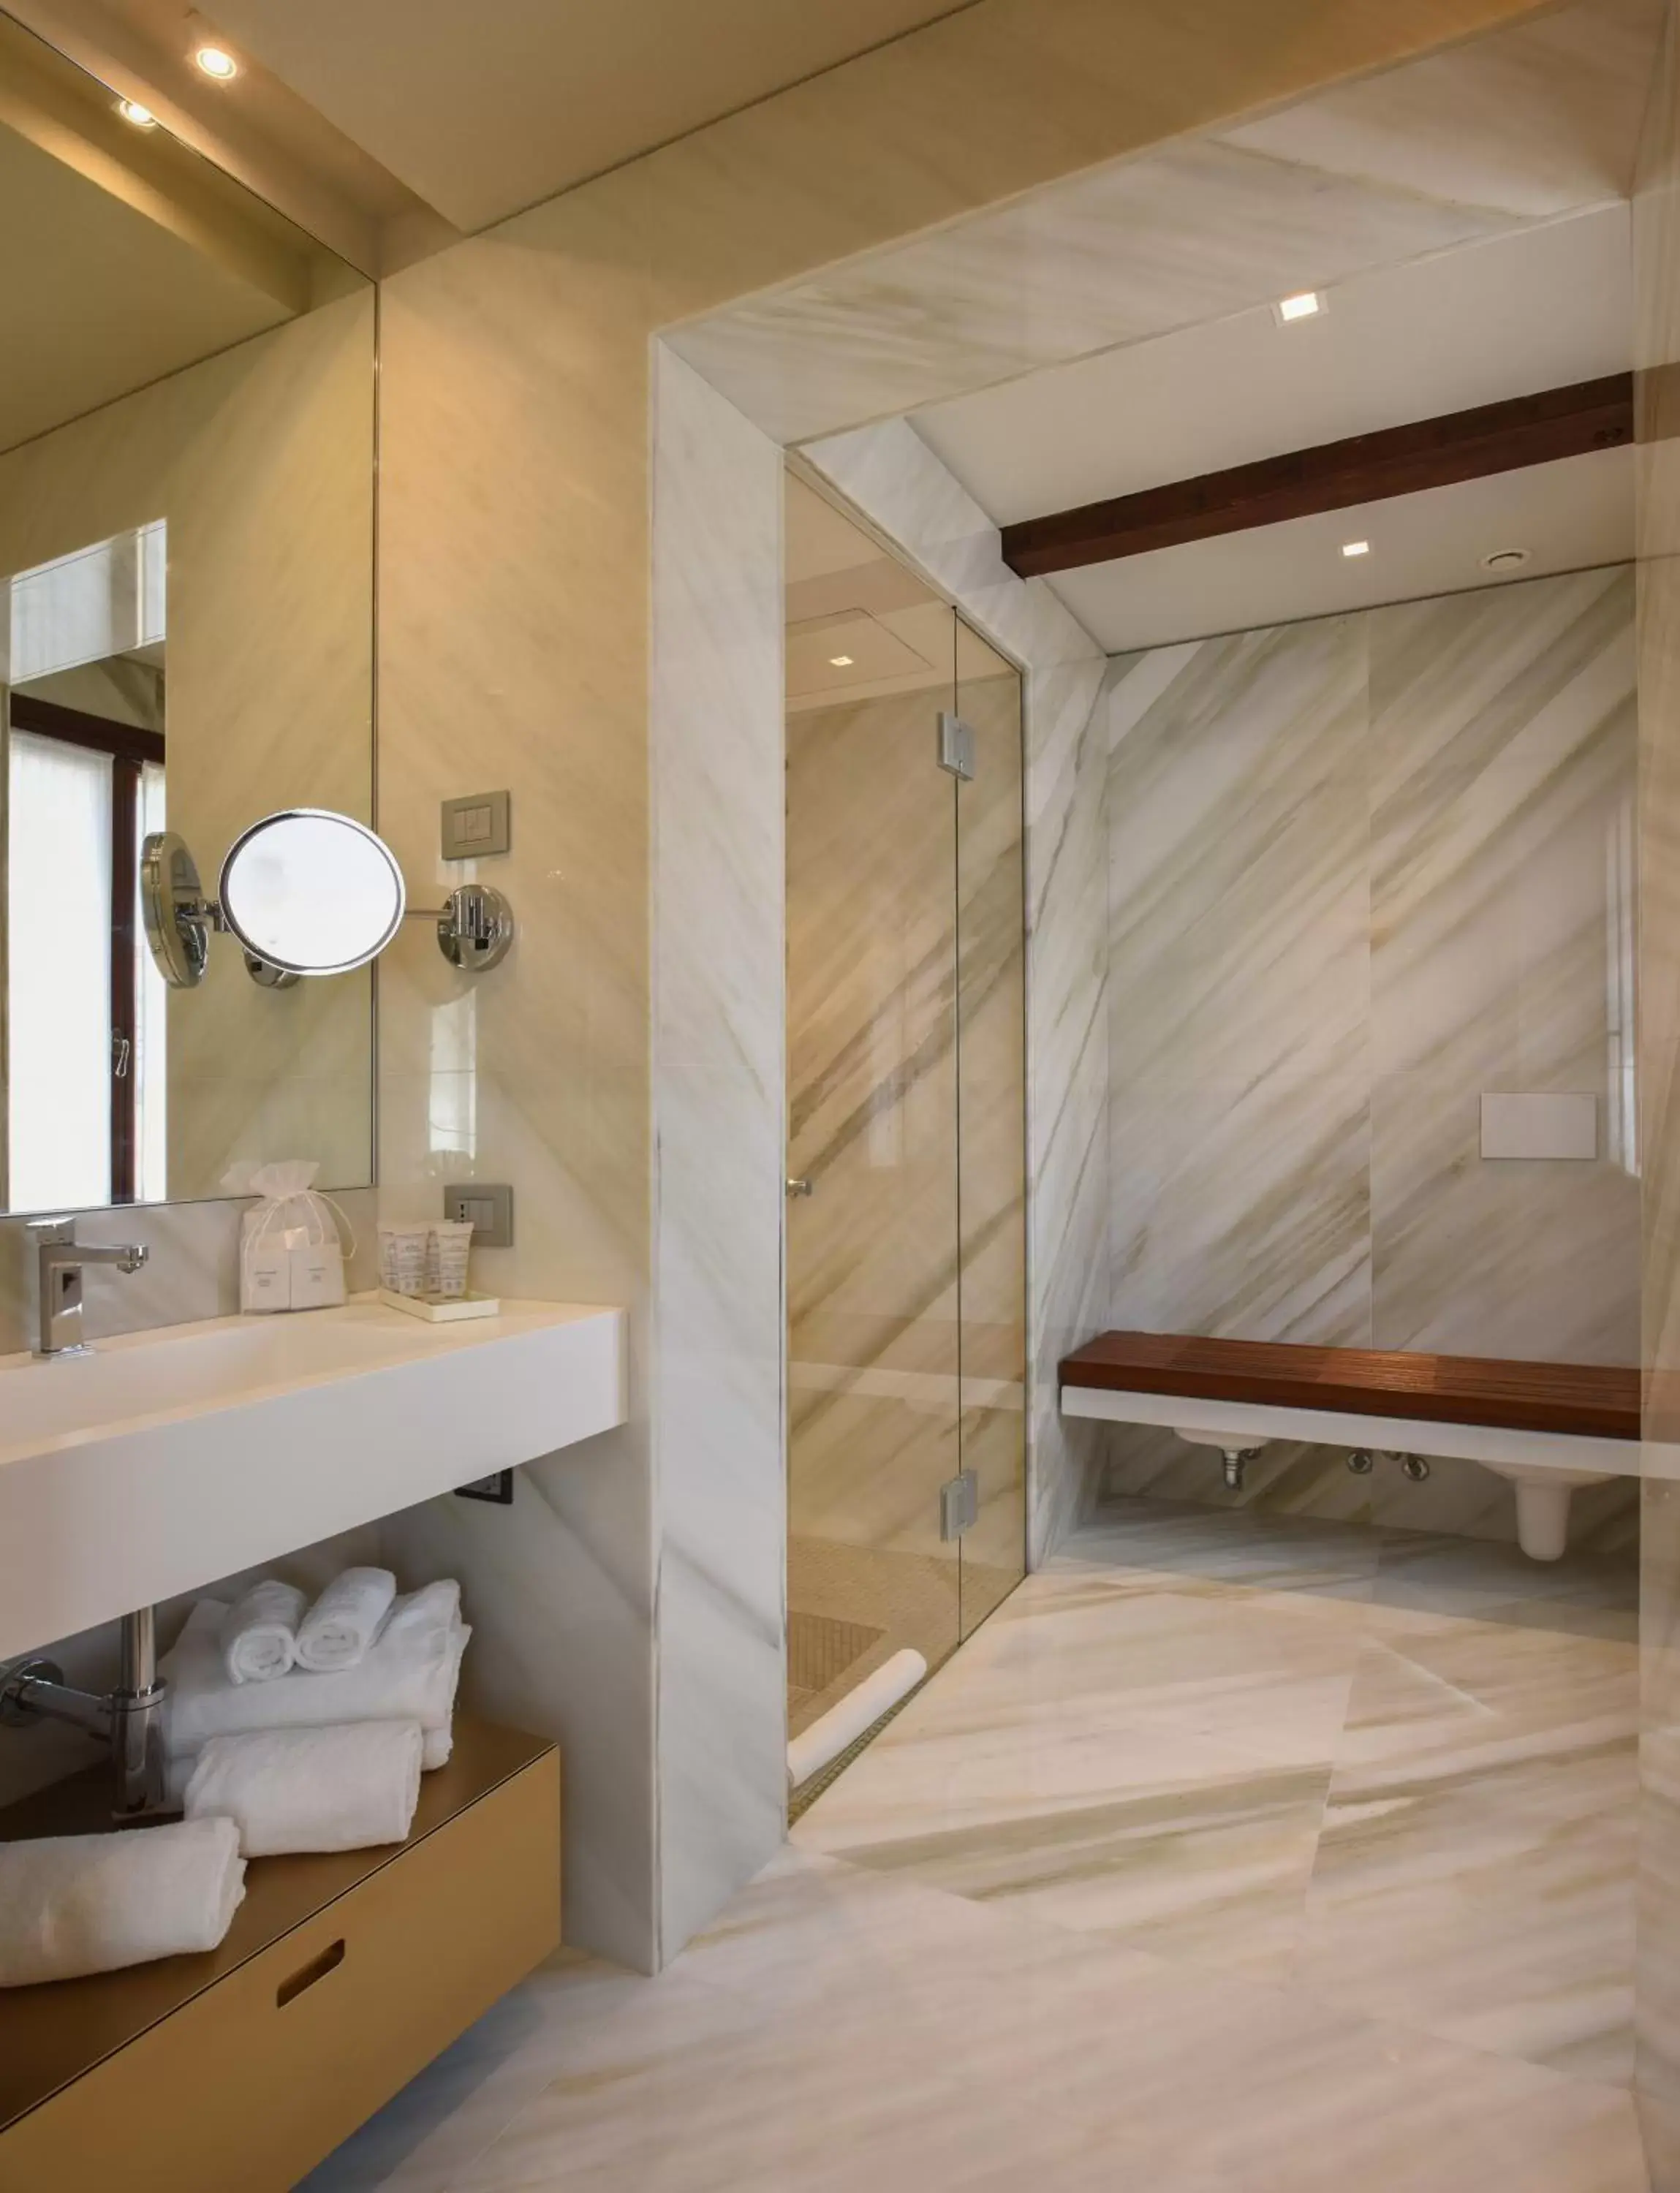 Shower, Bathroom in Santa Croce Boutique Hotel